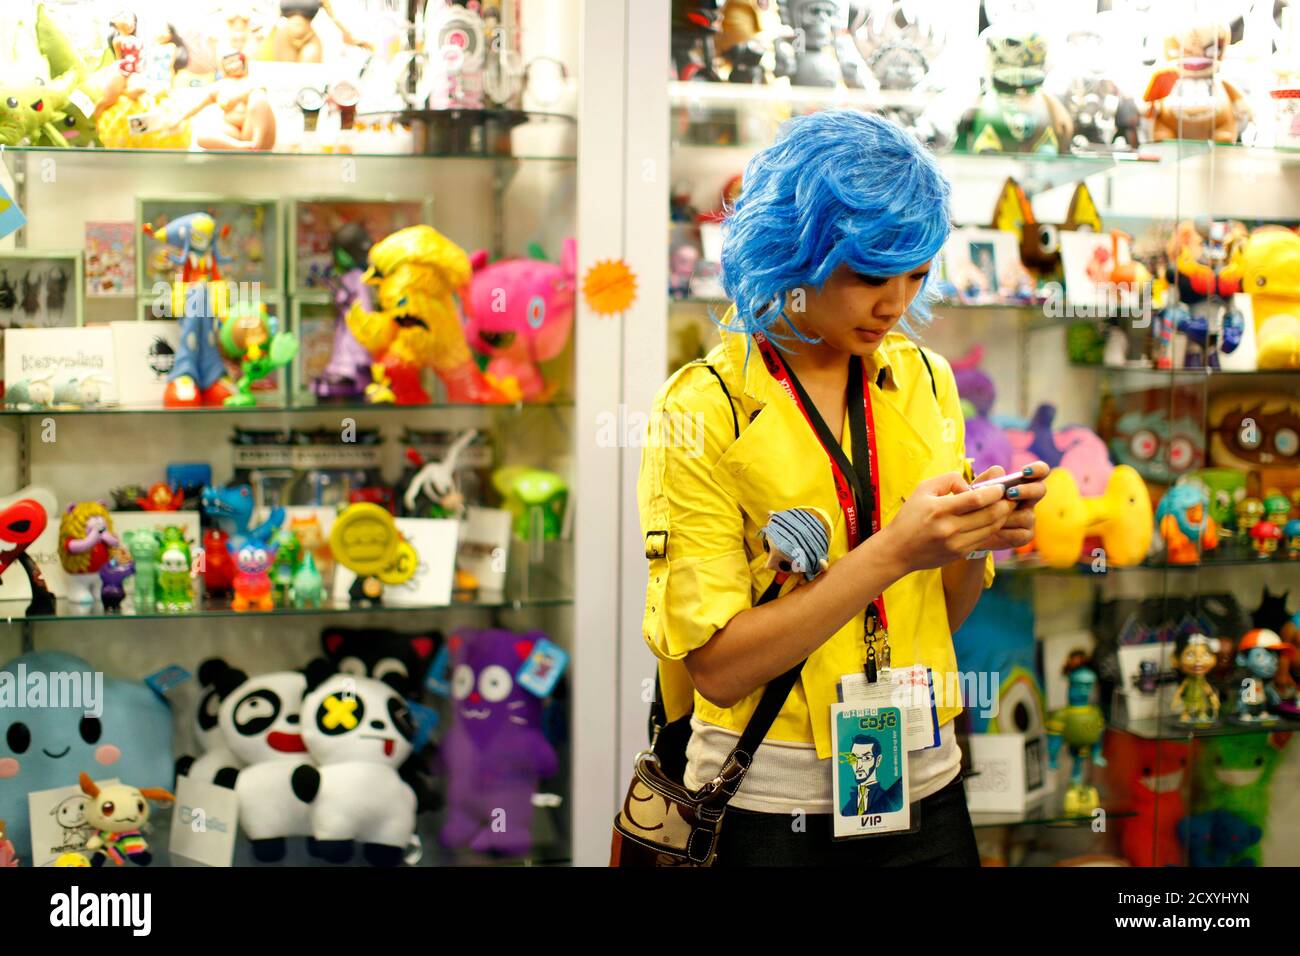 Un asistente vestido con textos de vestuario en un teléfono móvil en una tienda de juguetes en el piso de la convención Comic con durante el evento de cultura pop en San Diego, California 22 de julio de 2011. REUTERS/Mike Blake (ESTADOS UNIDOS - Tags: SOCIEDAD DEL ENTRETENIMIENTO) Foto de stock